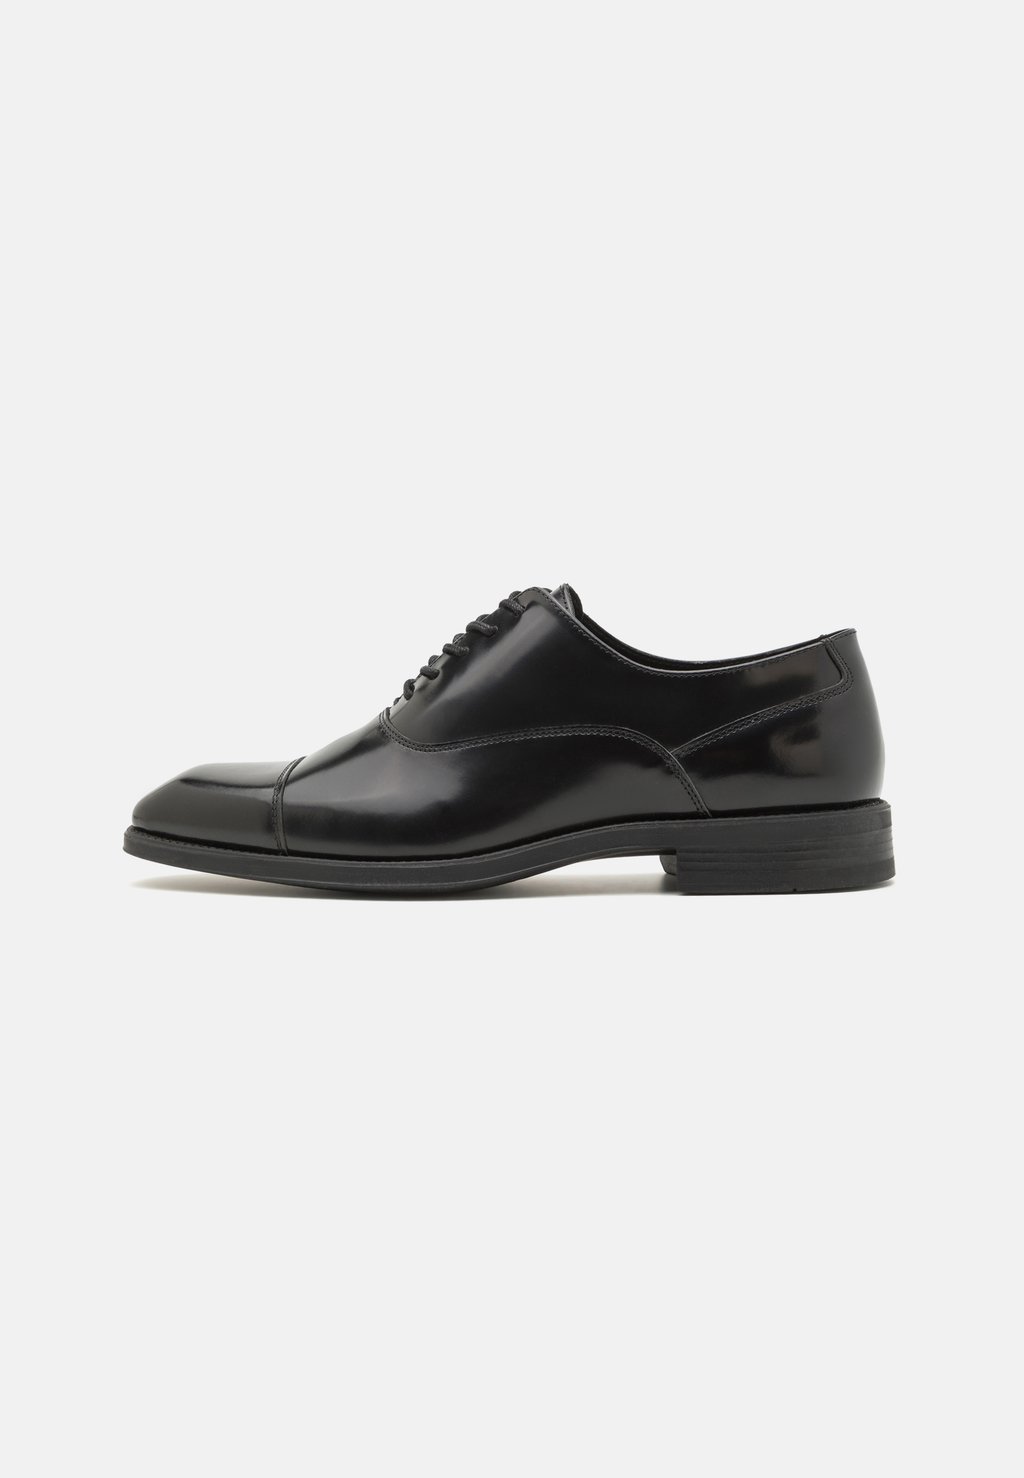 Элегантные туфли на шнуровке Tozzi ALDO, черный элегантные туфли на шнуровке faro aldo цвет cognac